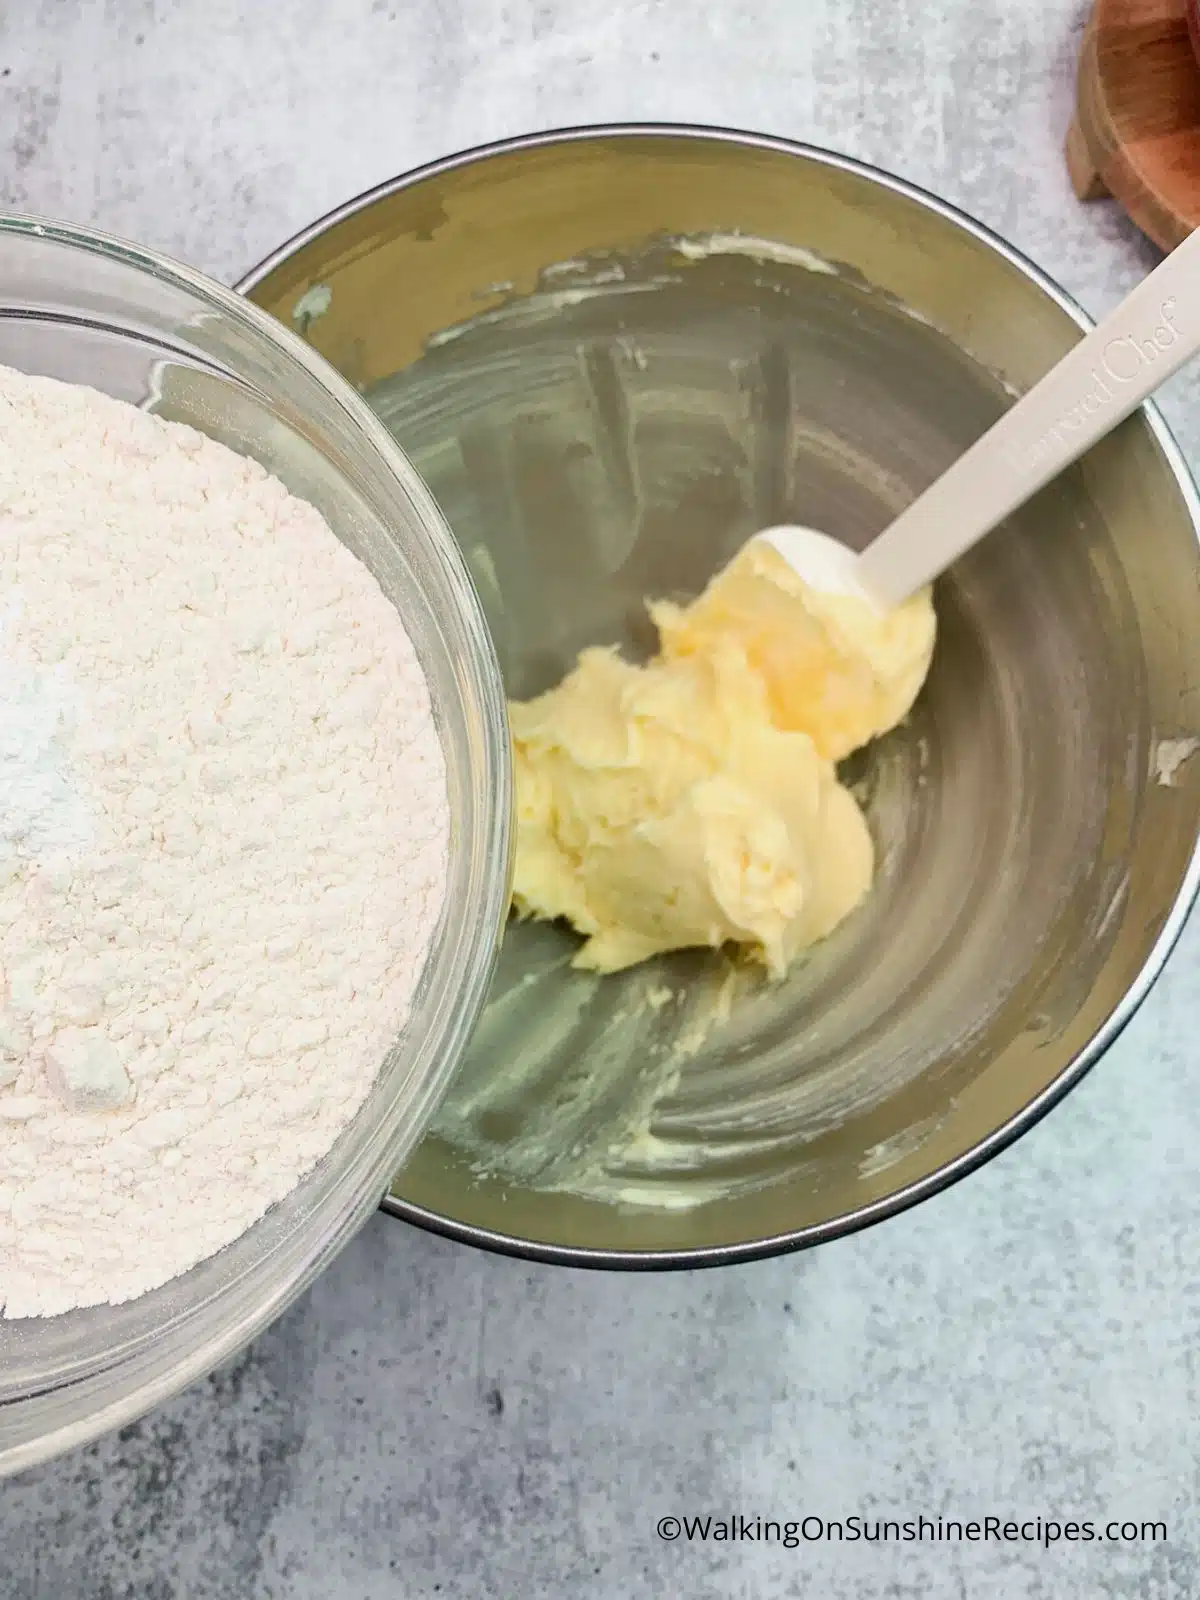 Add flour to butter mixture.